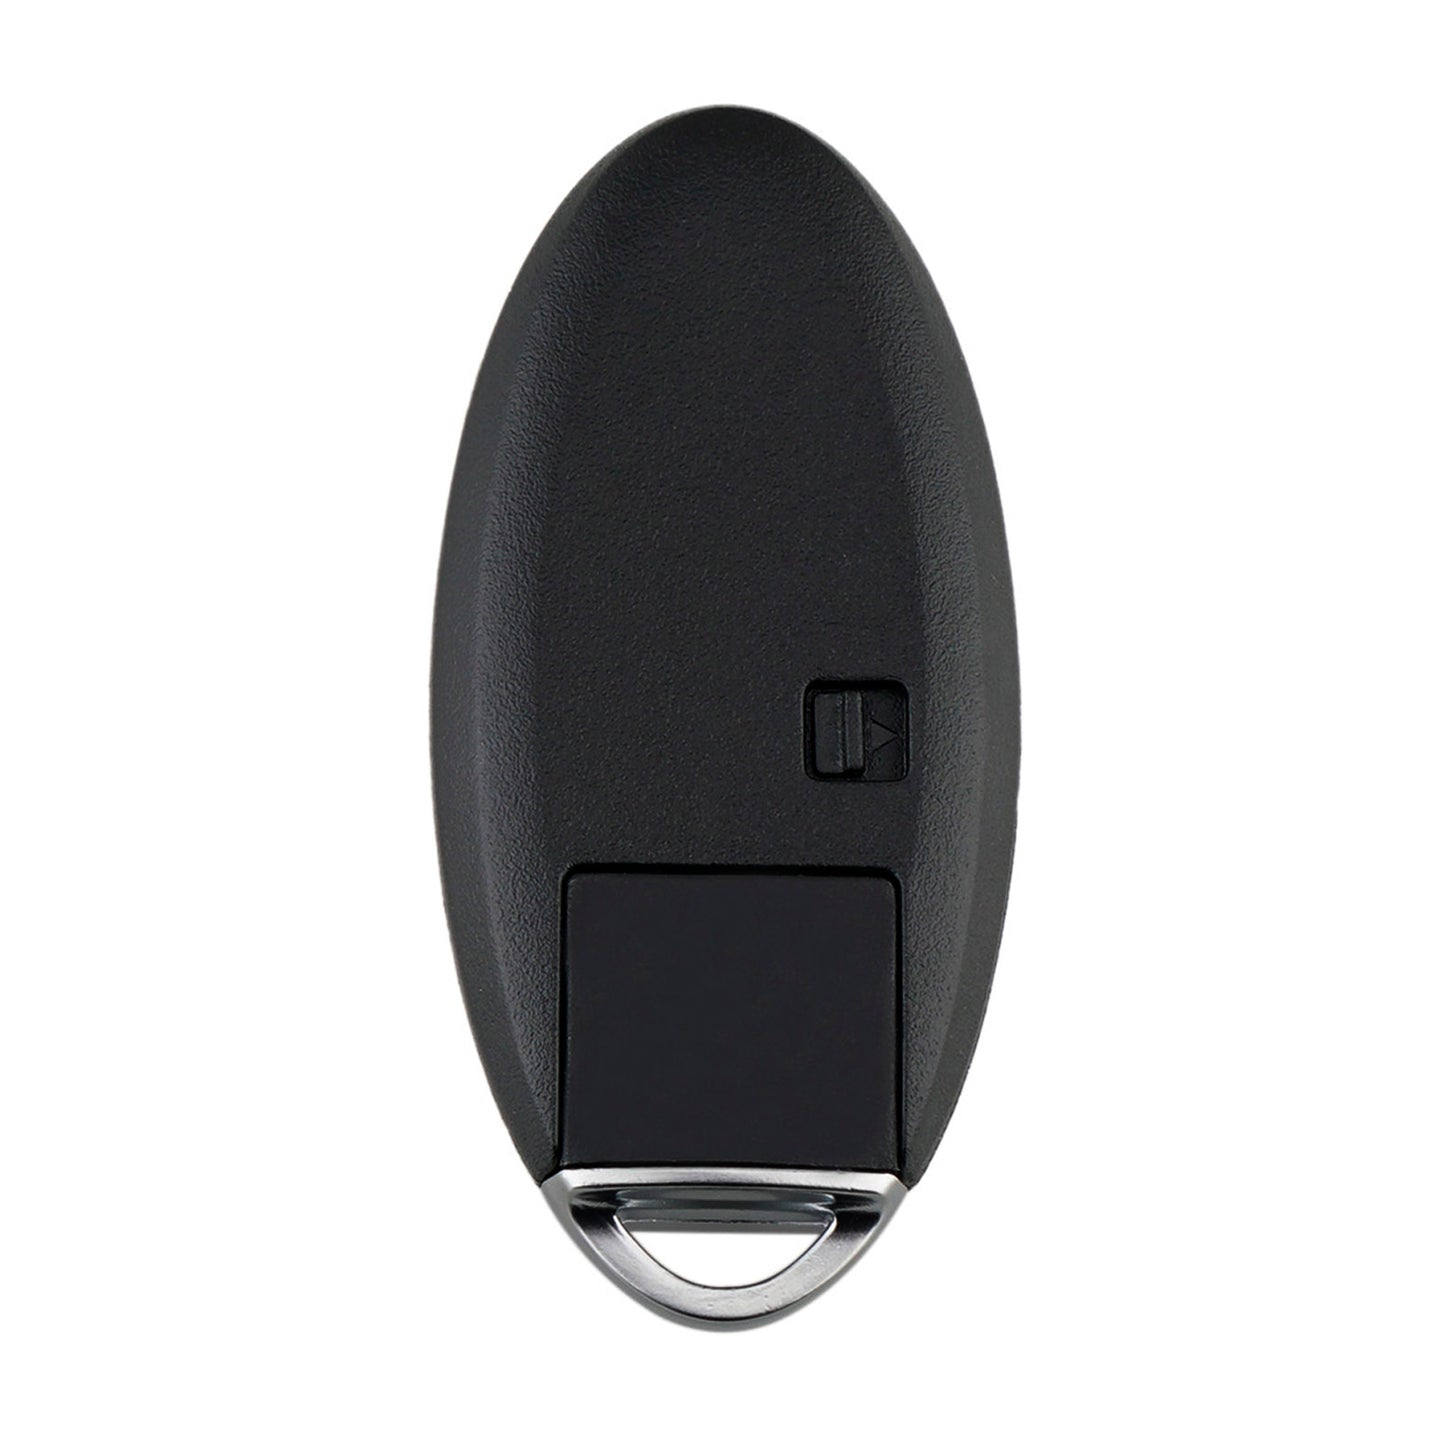 4 Buttons 315MHz Keyless Entry Fob Remote Car Key For 2013 - 2019 Nissan Sentra Versa Leaf FCC ID: CWTWB1U840 SKU : J302